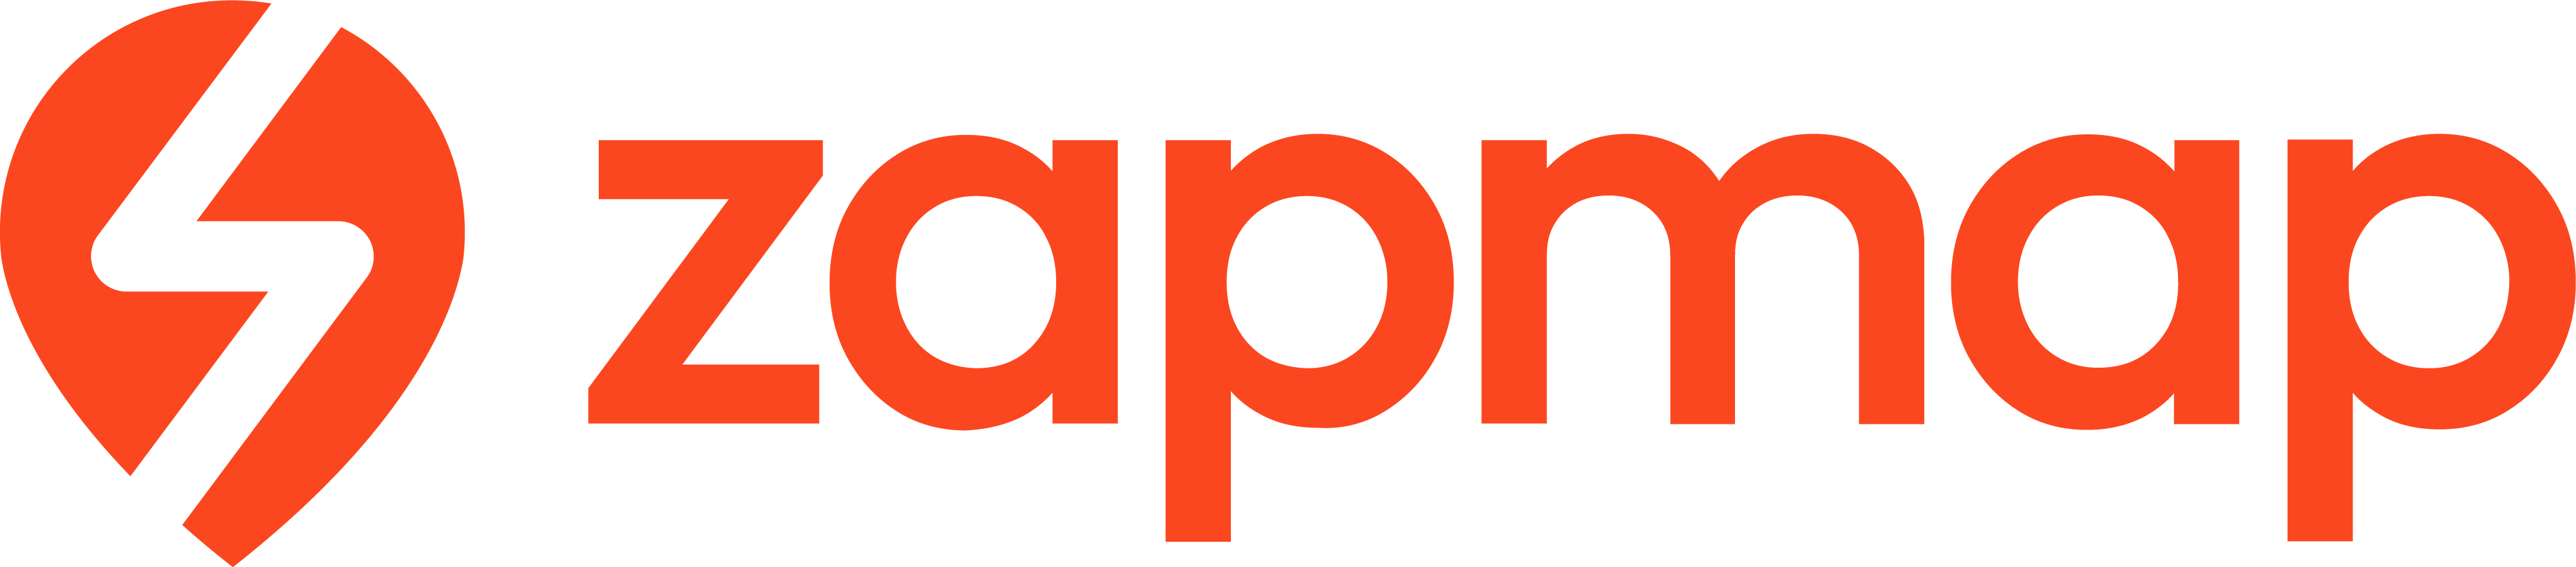 ZapMap